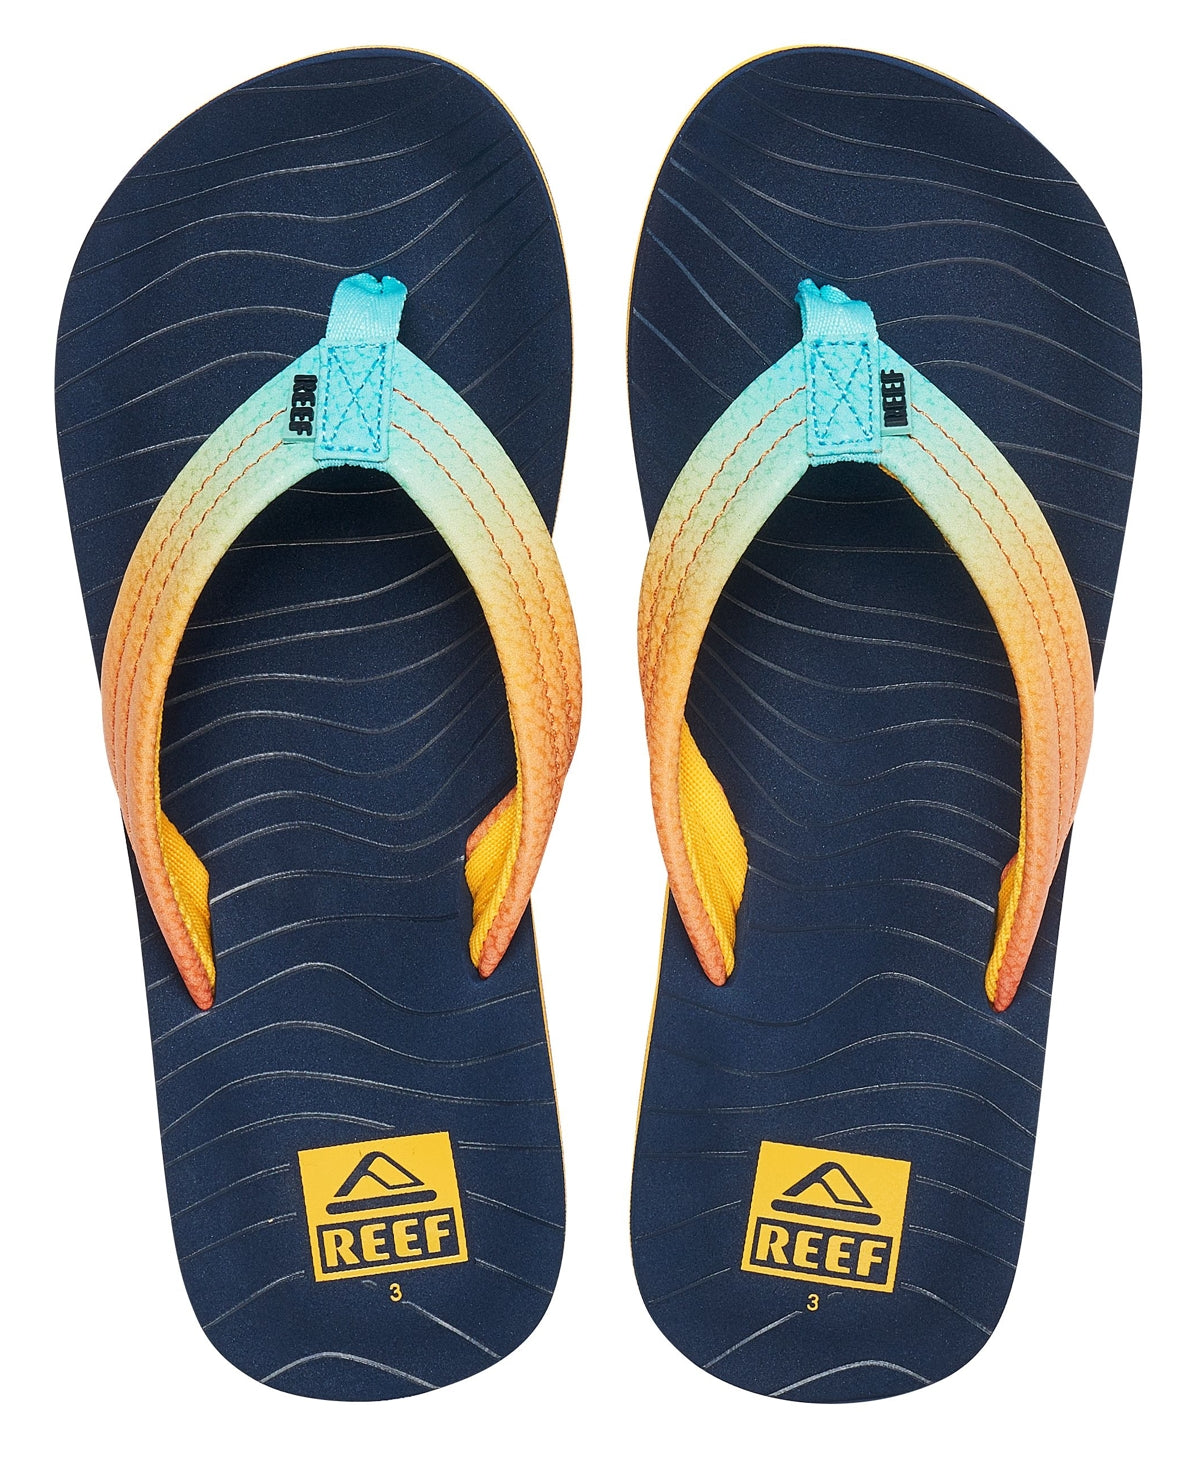 Reef Kids 'Ahi' Flip Flops - Sun and Ocean